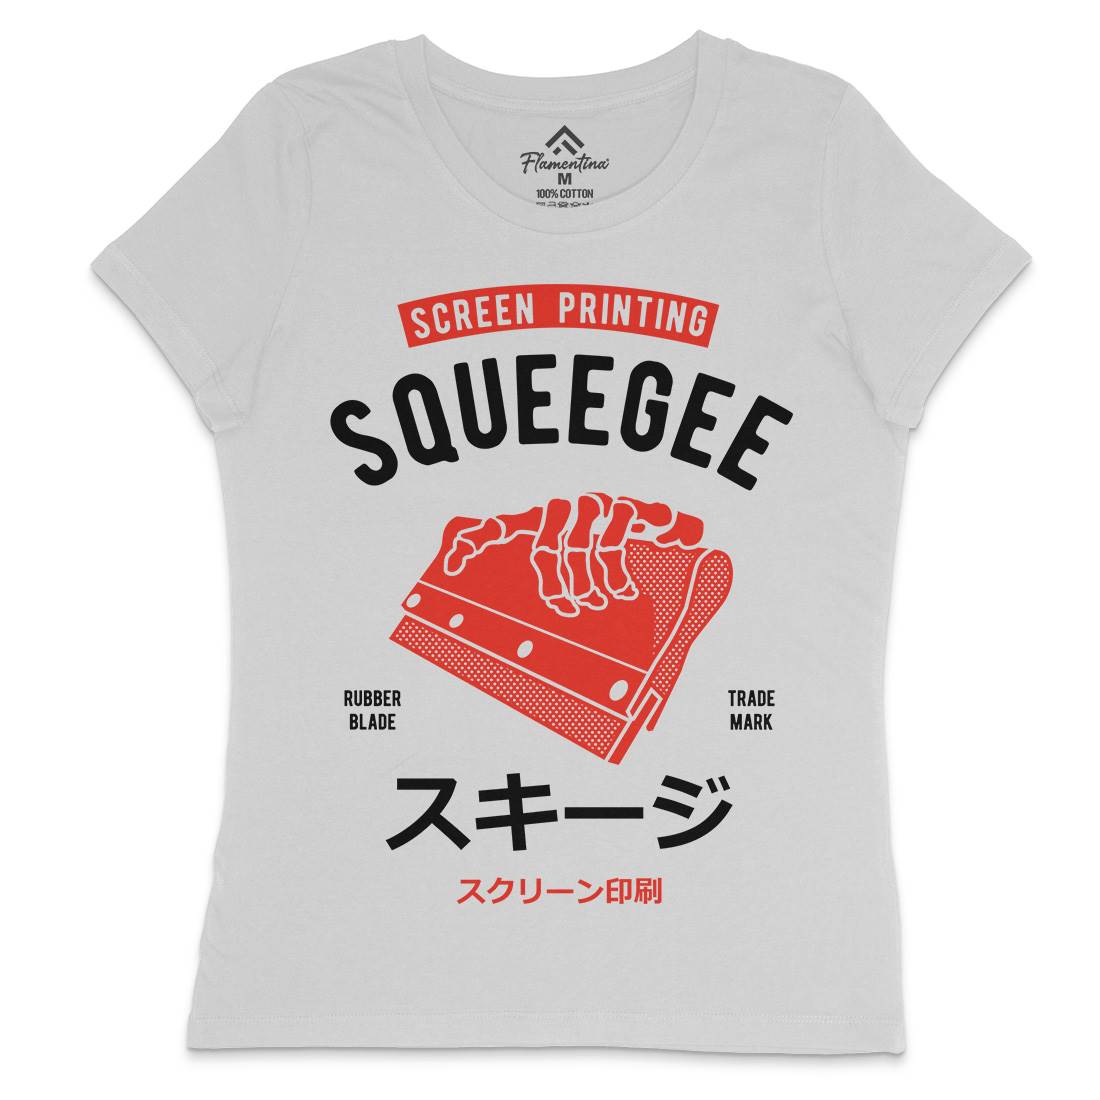 Squeegee Social Club Womens Crew Neck T-Shirt Work A282